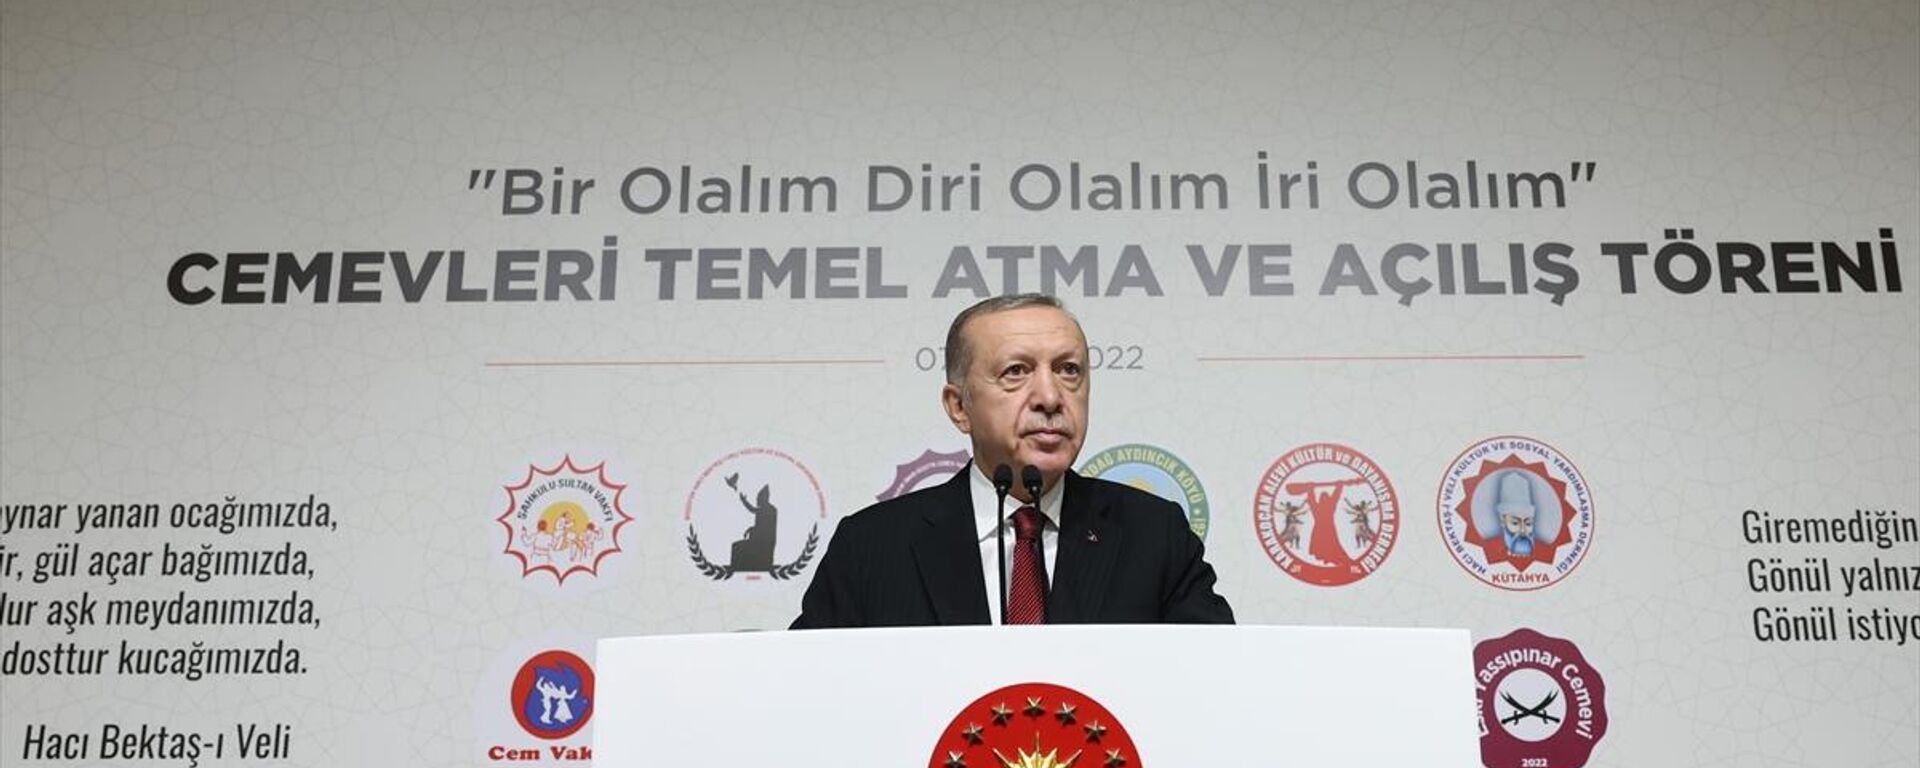 Cumhurbaşkanı Erdoğan, Cemevleri Temel Atma ve Toplu Açılış Töreni'nde konuştu - Sputnik Türkiye, 1920, 07.10.2022